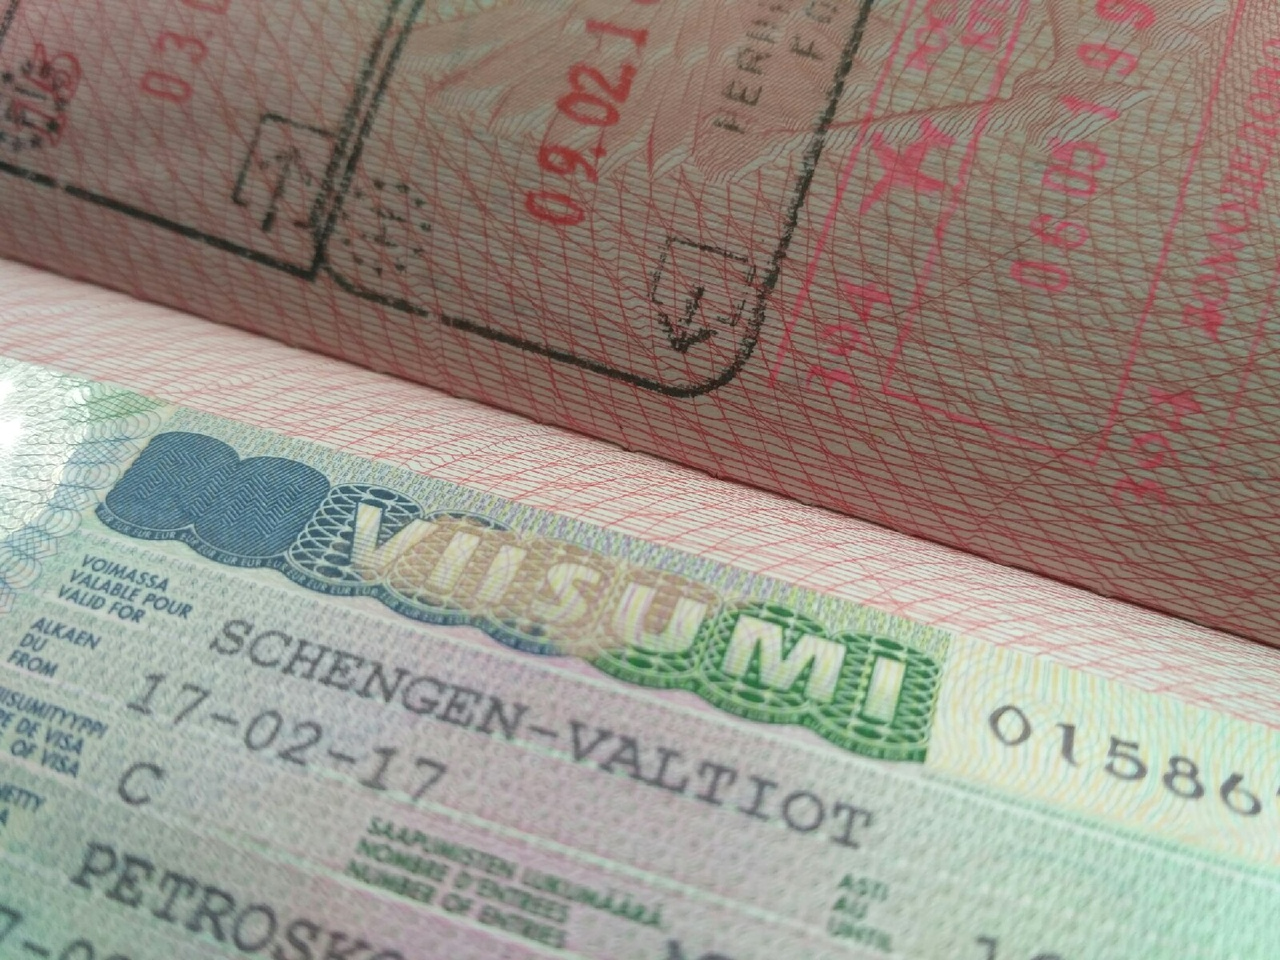 До начала пандемии коронавируса Финляндия была одной из стран, выдававших россиянам наибольшее количество шенгенских виз. Так в 2019 году Финляндия выдала в России порядка 790 тысяч виз. Фото: Karjalan Sanomat